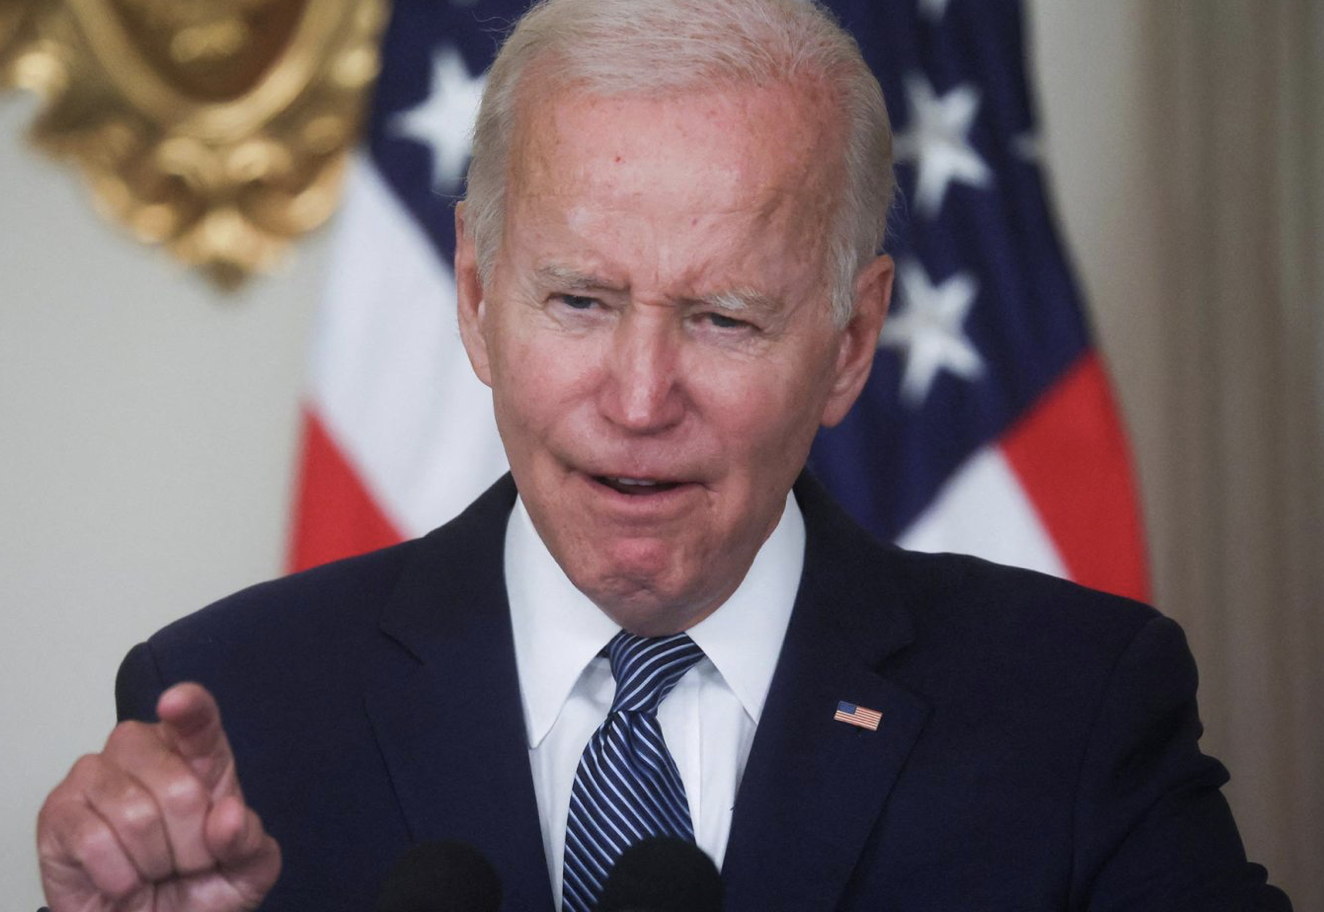 Sarcastic Biden points finger sneers